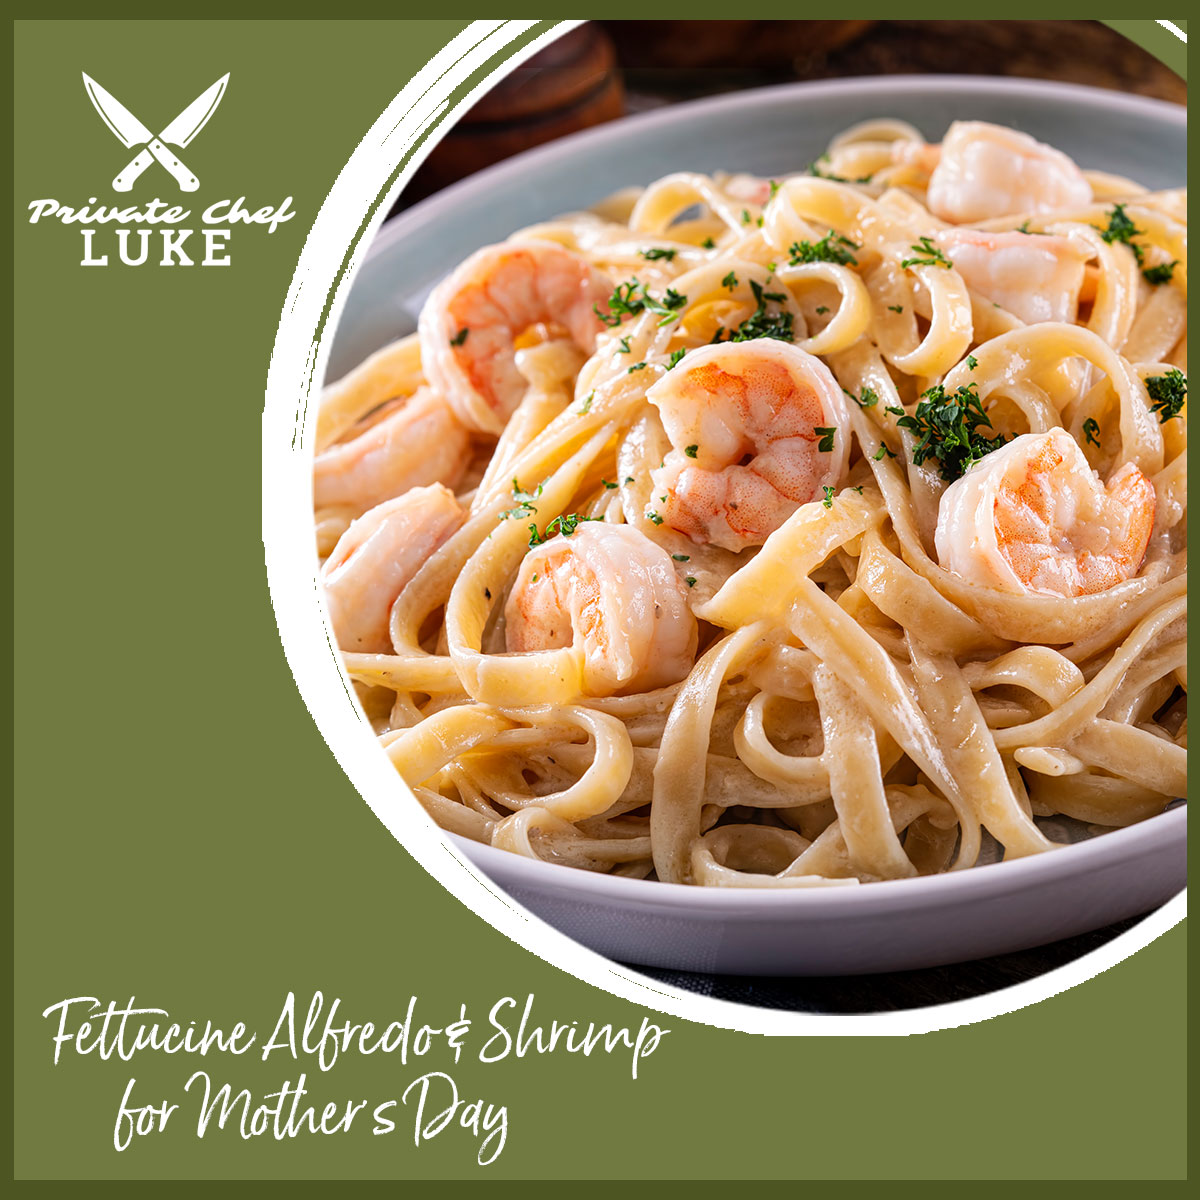 Download Chef Luke's recipe for Fettucine Alfredo and Shrimp for Mother's Day